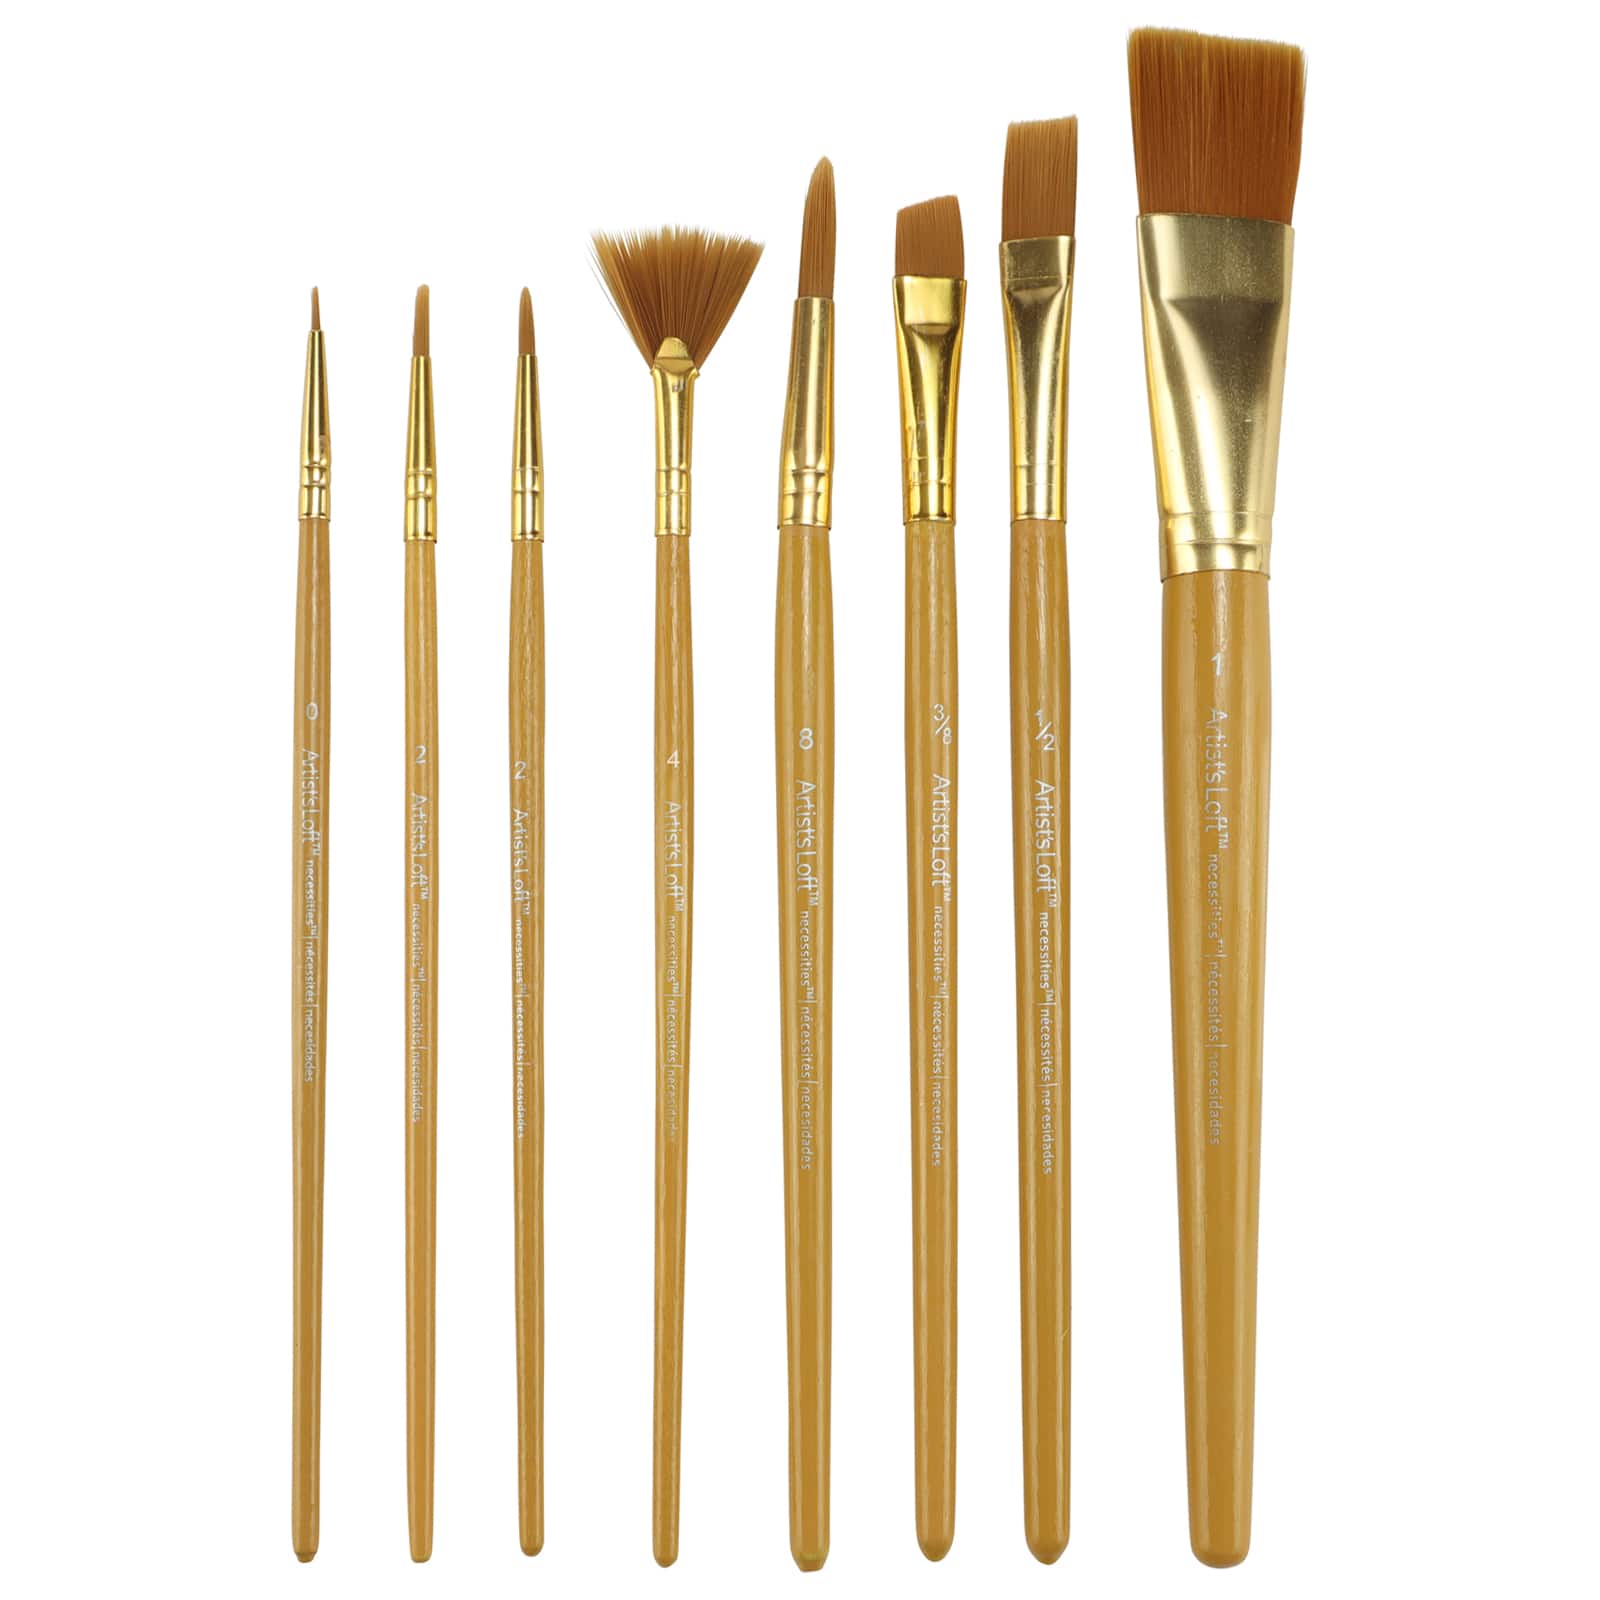 Shop Plaid Plaid ® Color By Me™ Brush Sets - Artist Brushes, 10 pc